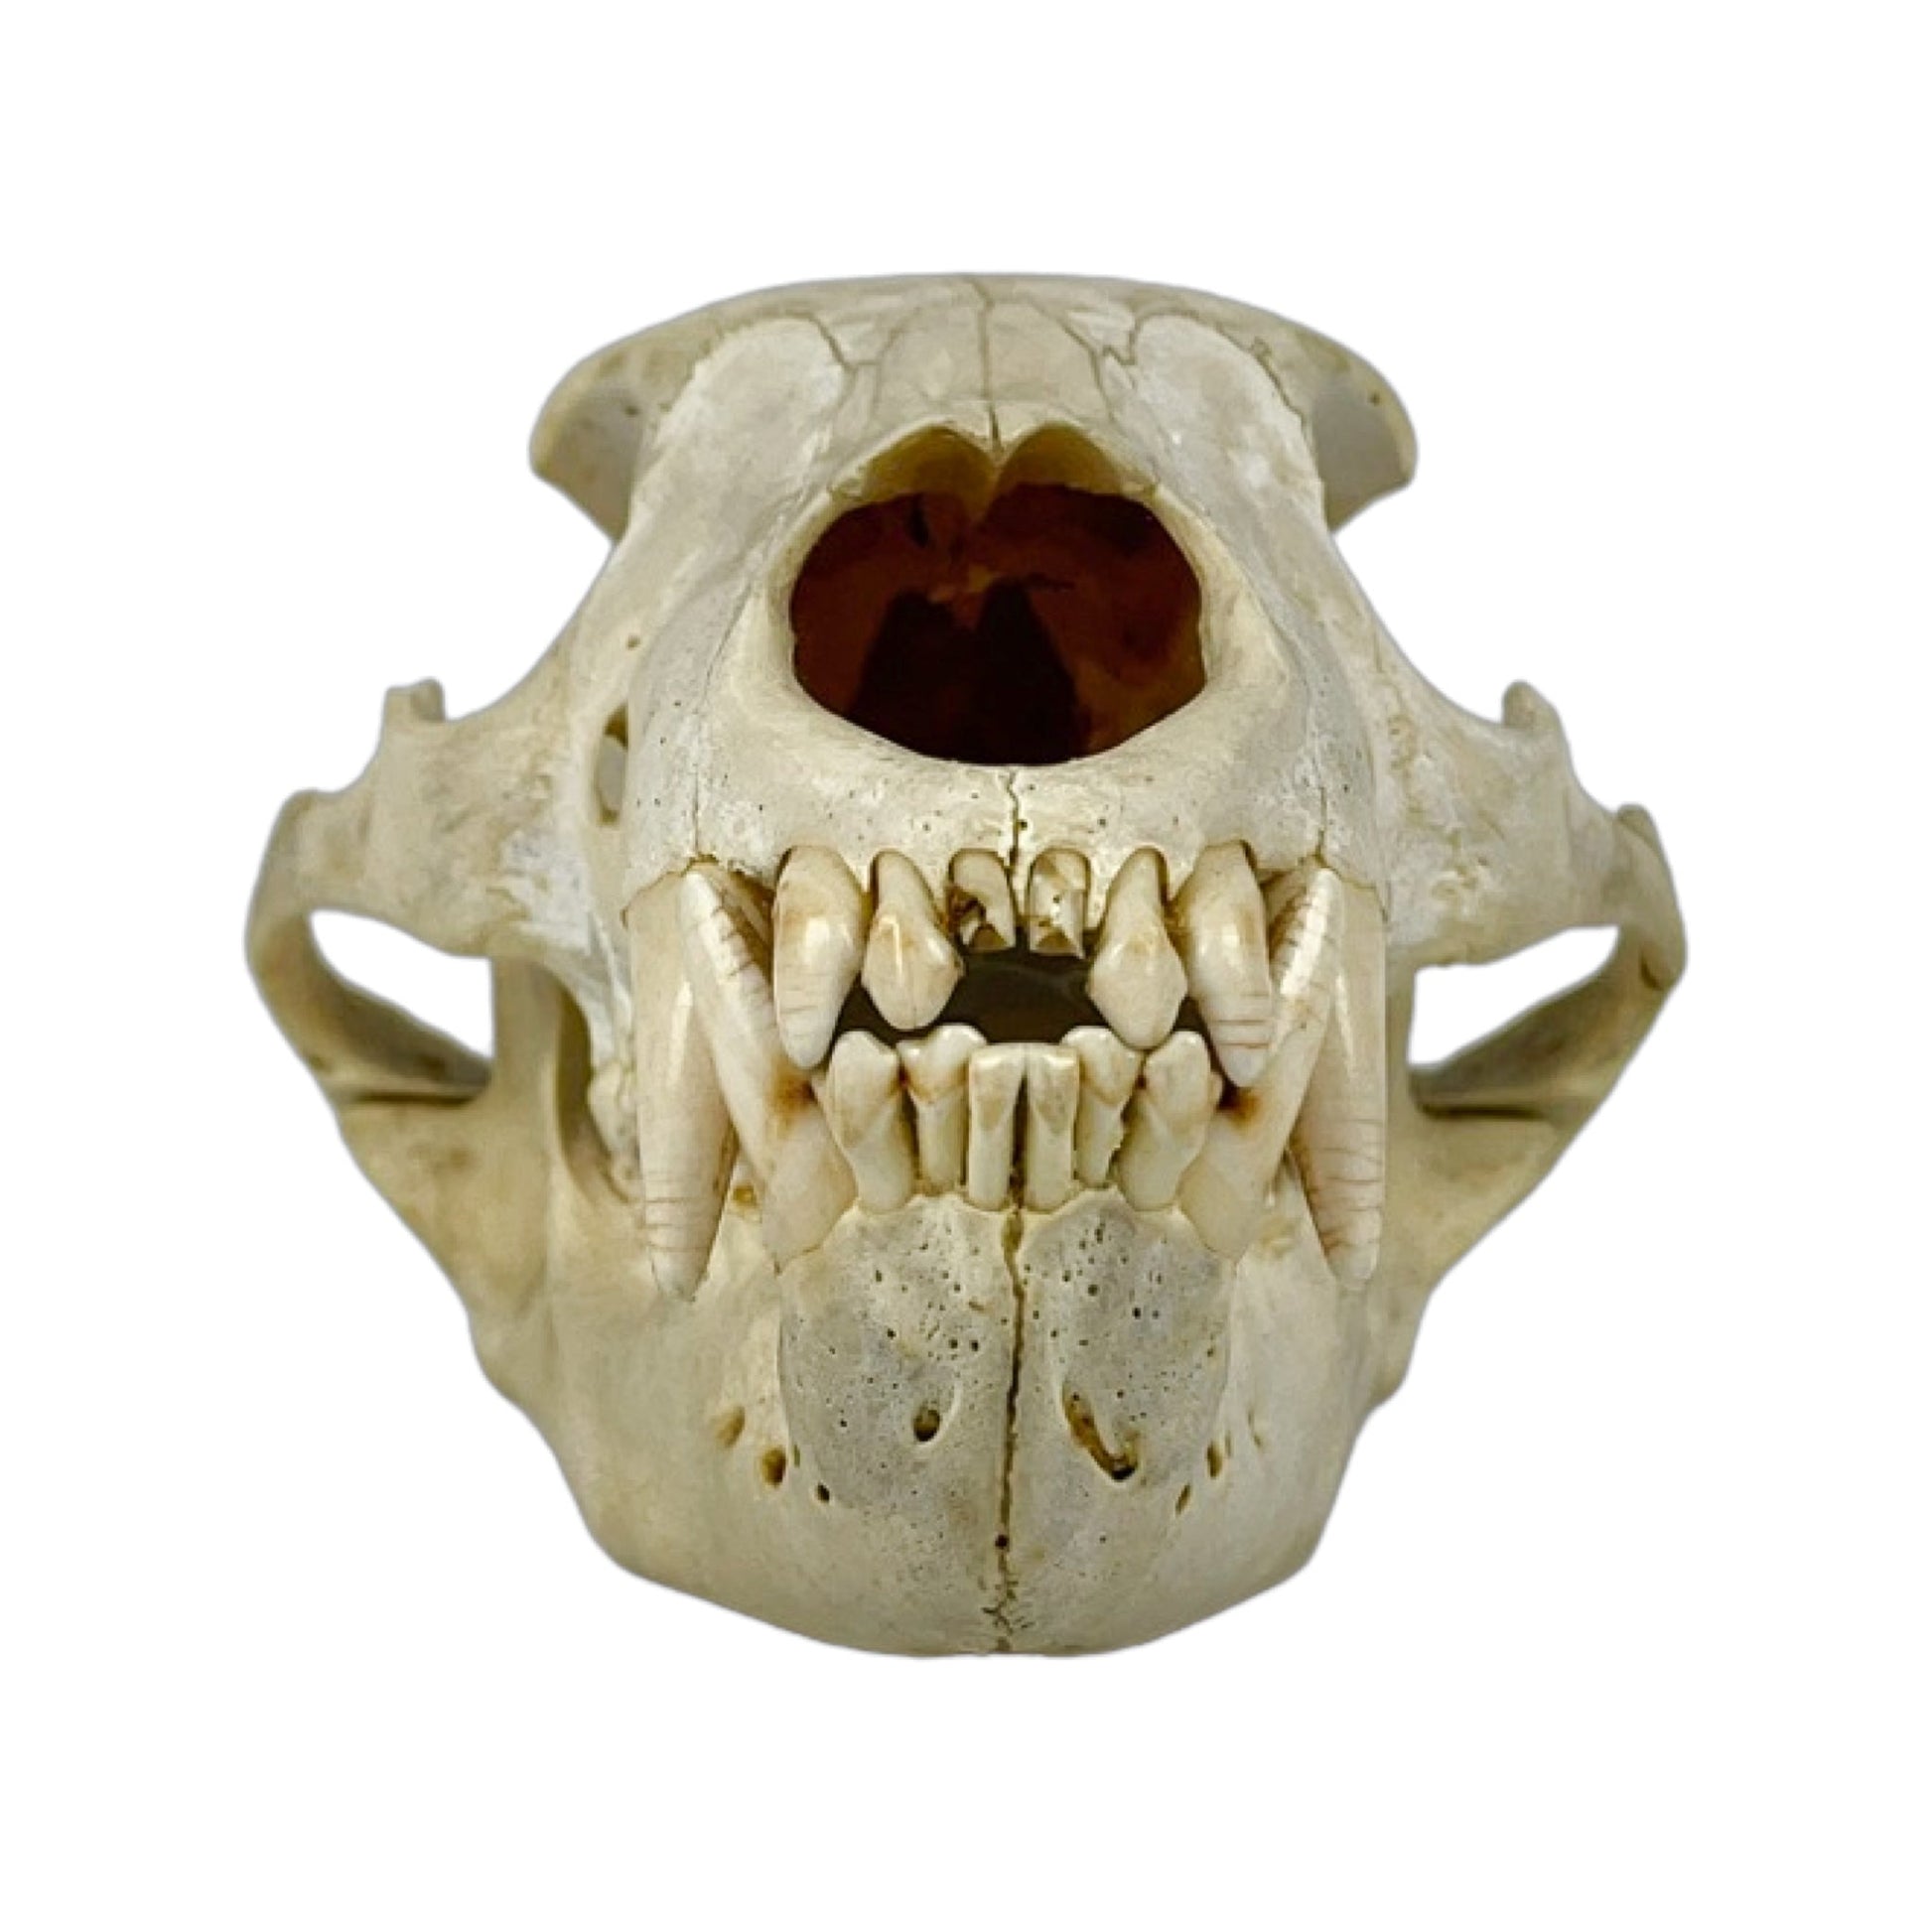 A Home Decor Taxidermy Bear Skull  of Grade Respectable